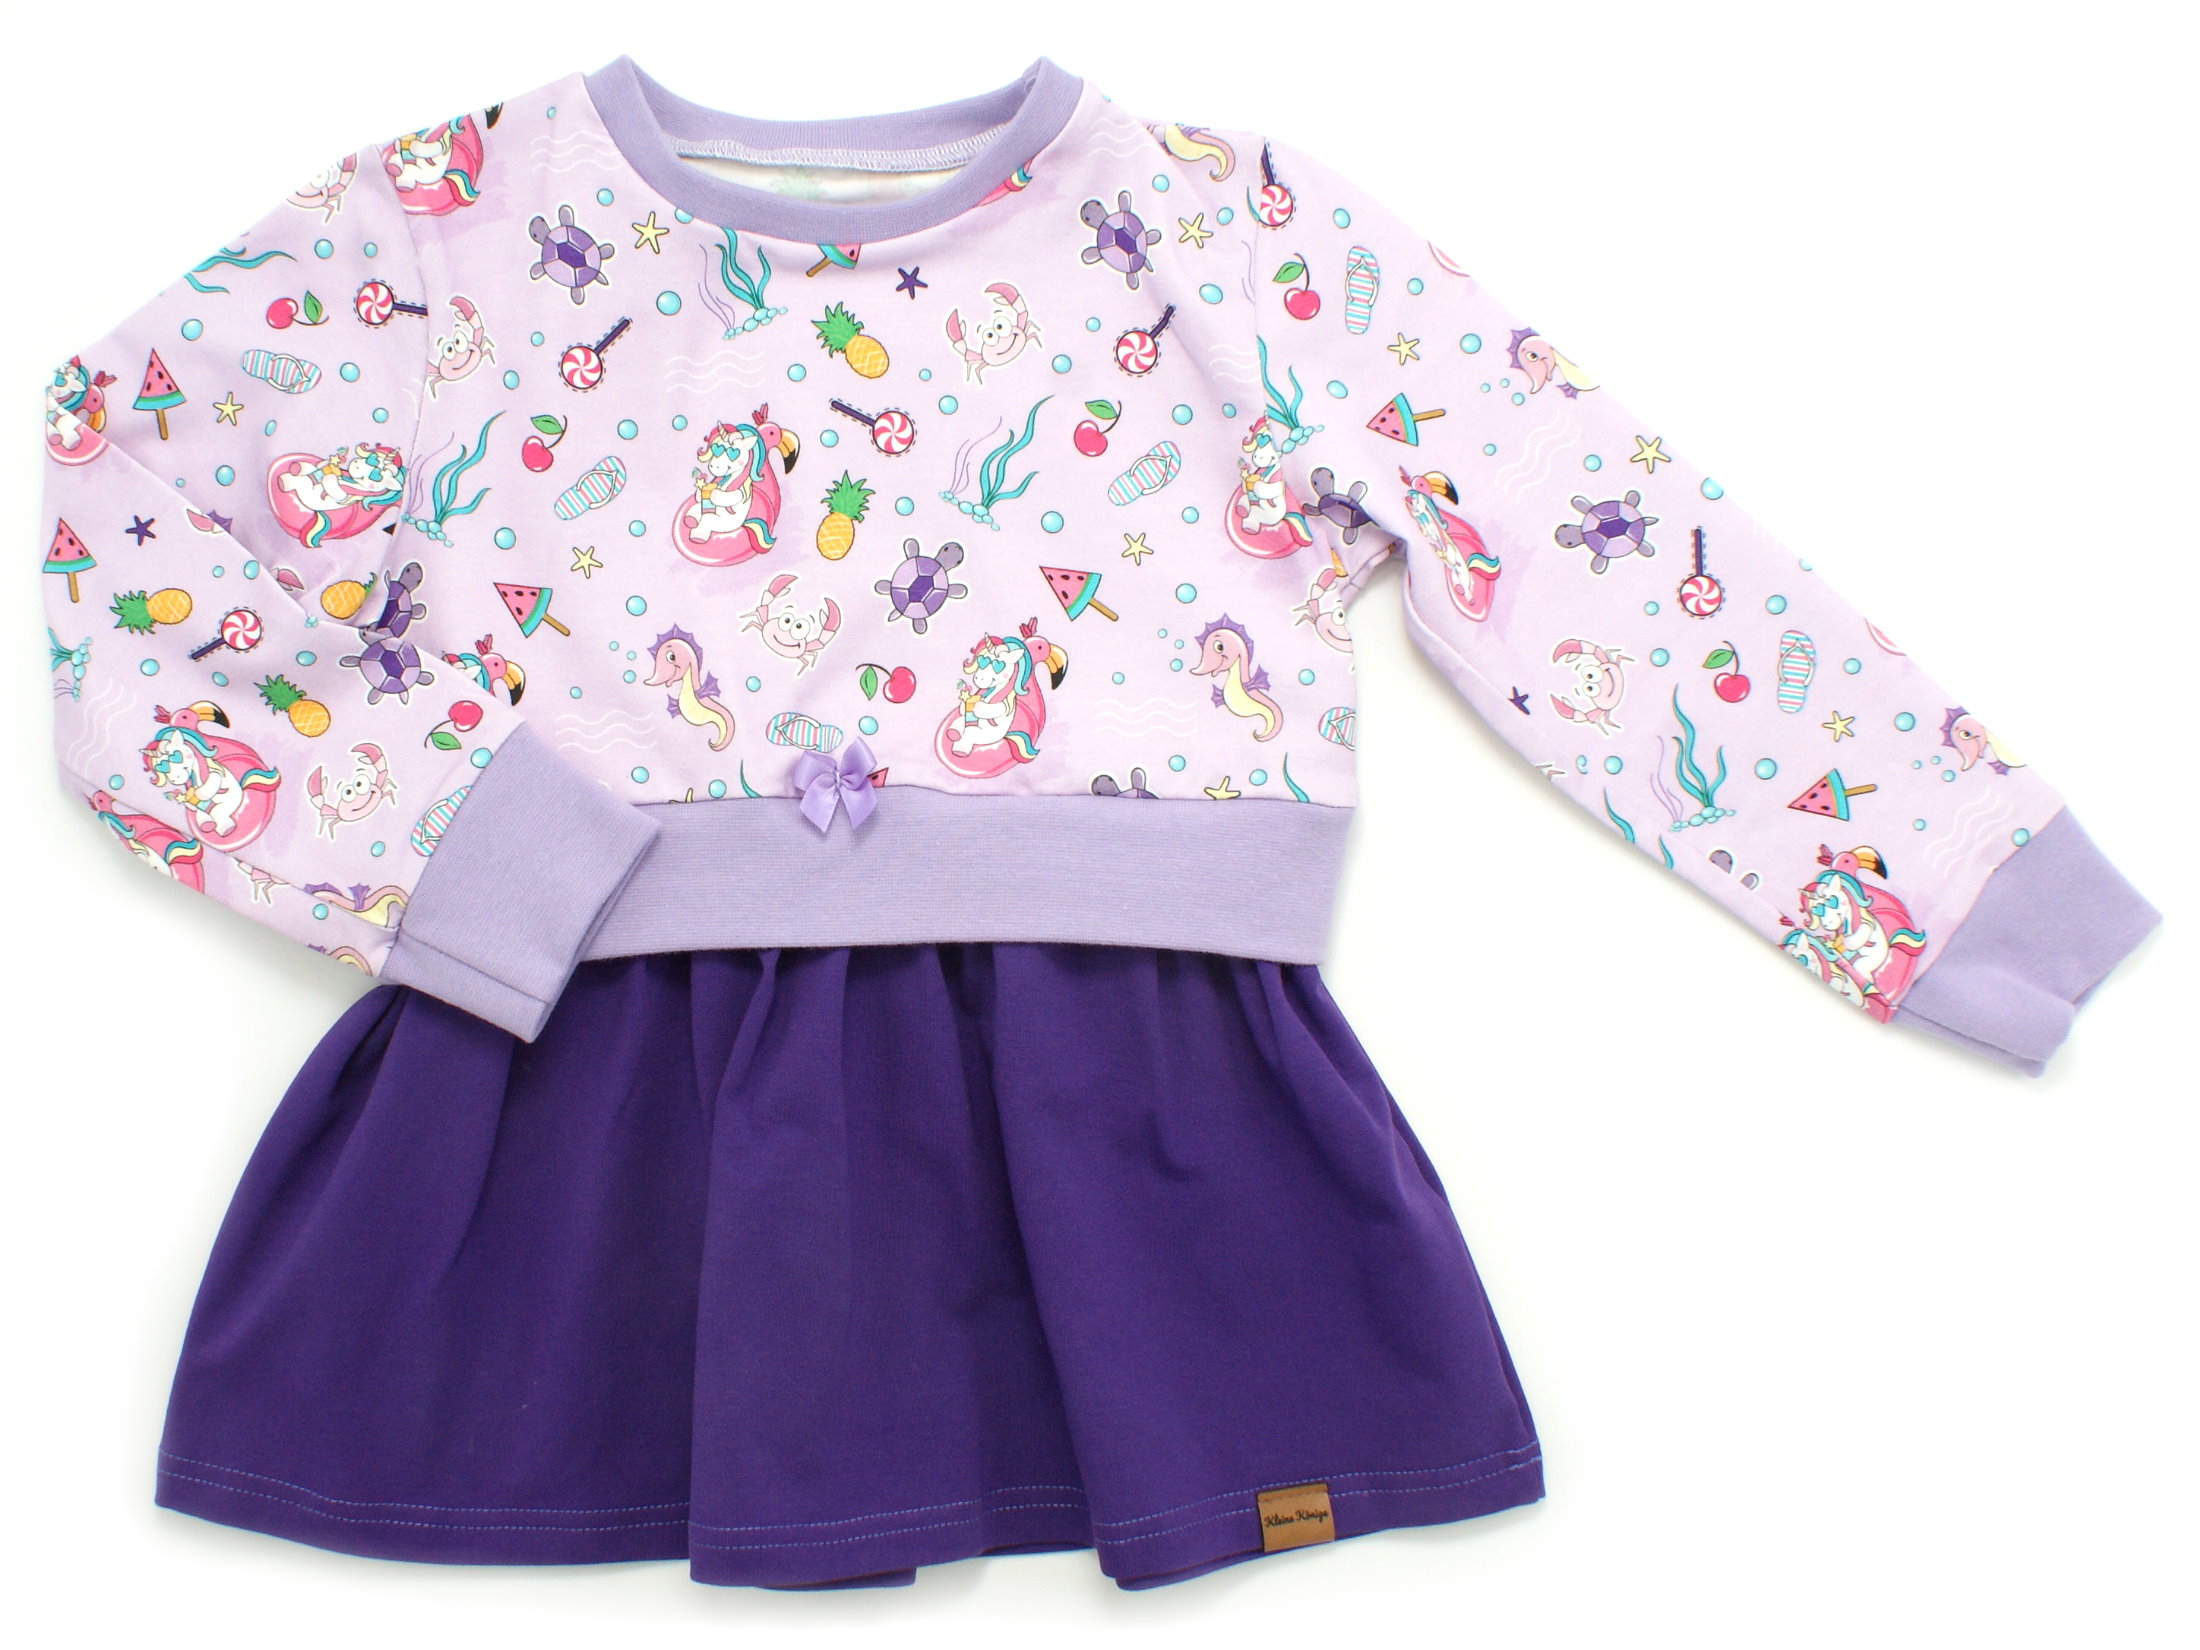 Girly Dress Kinderkleid "Unicornparty" flieder lila